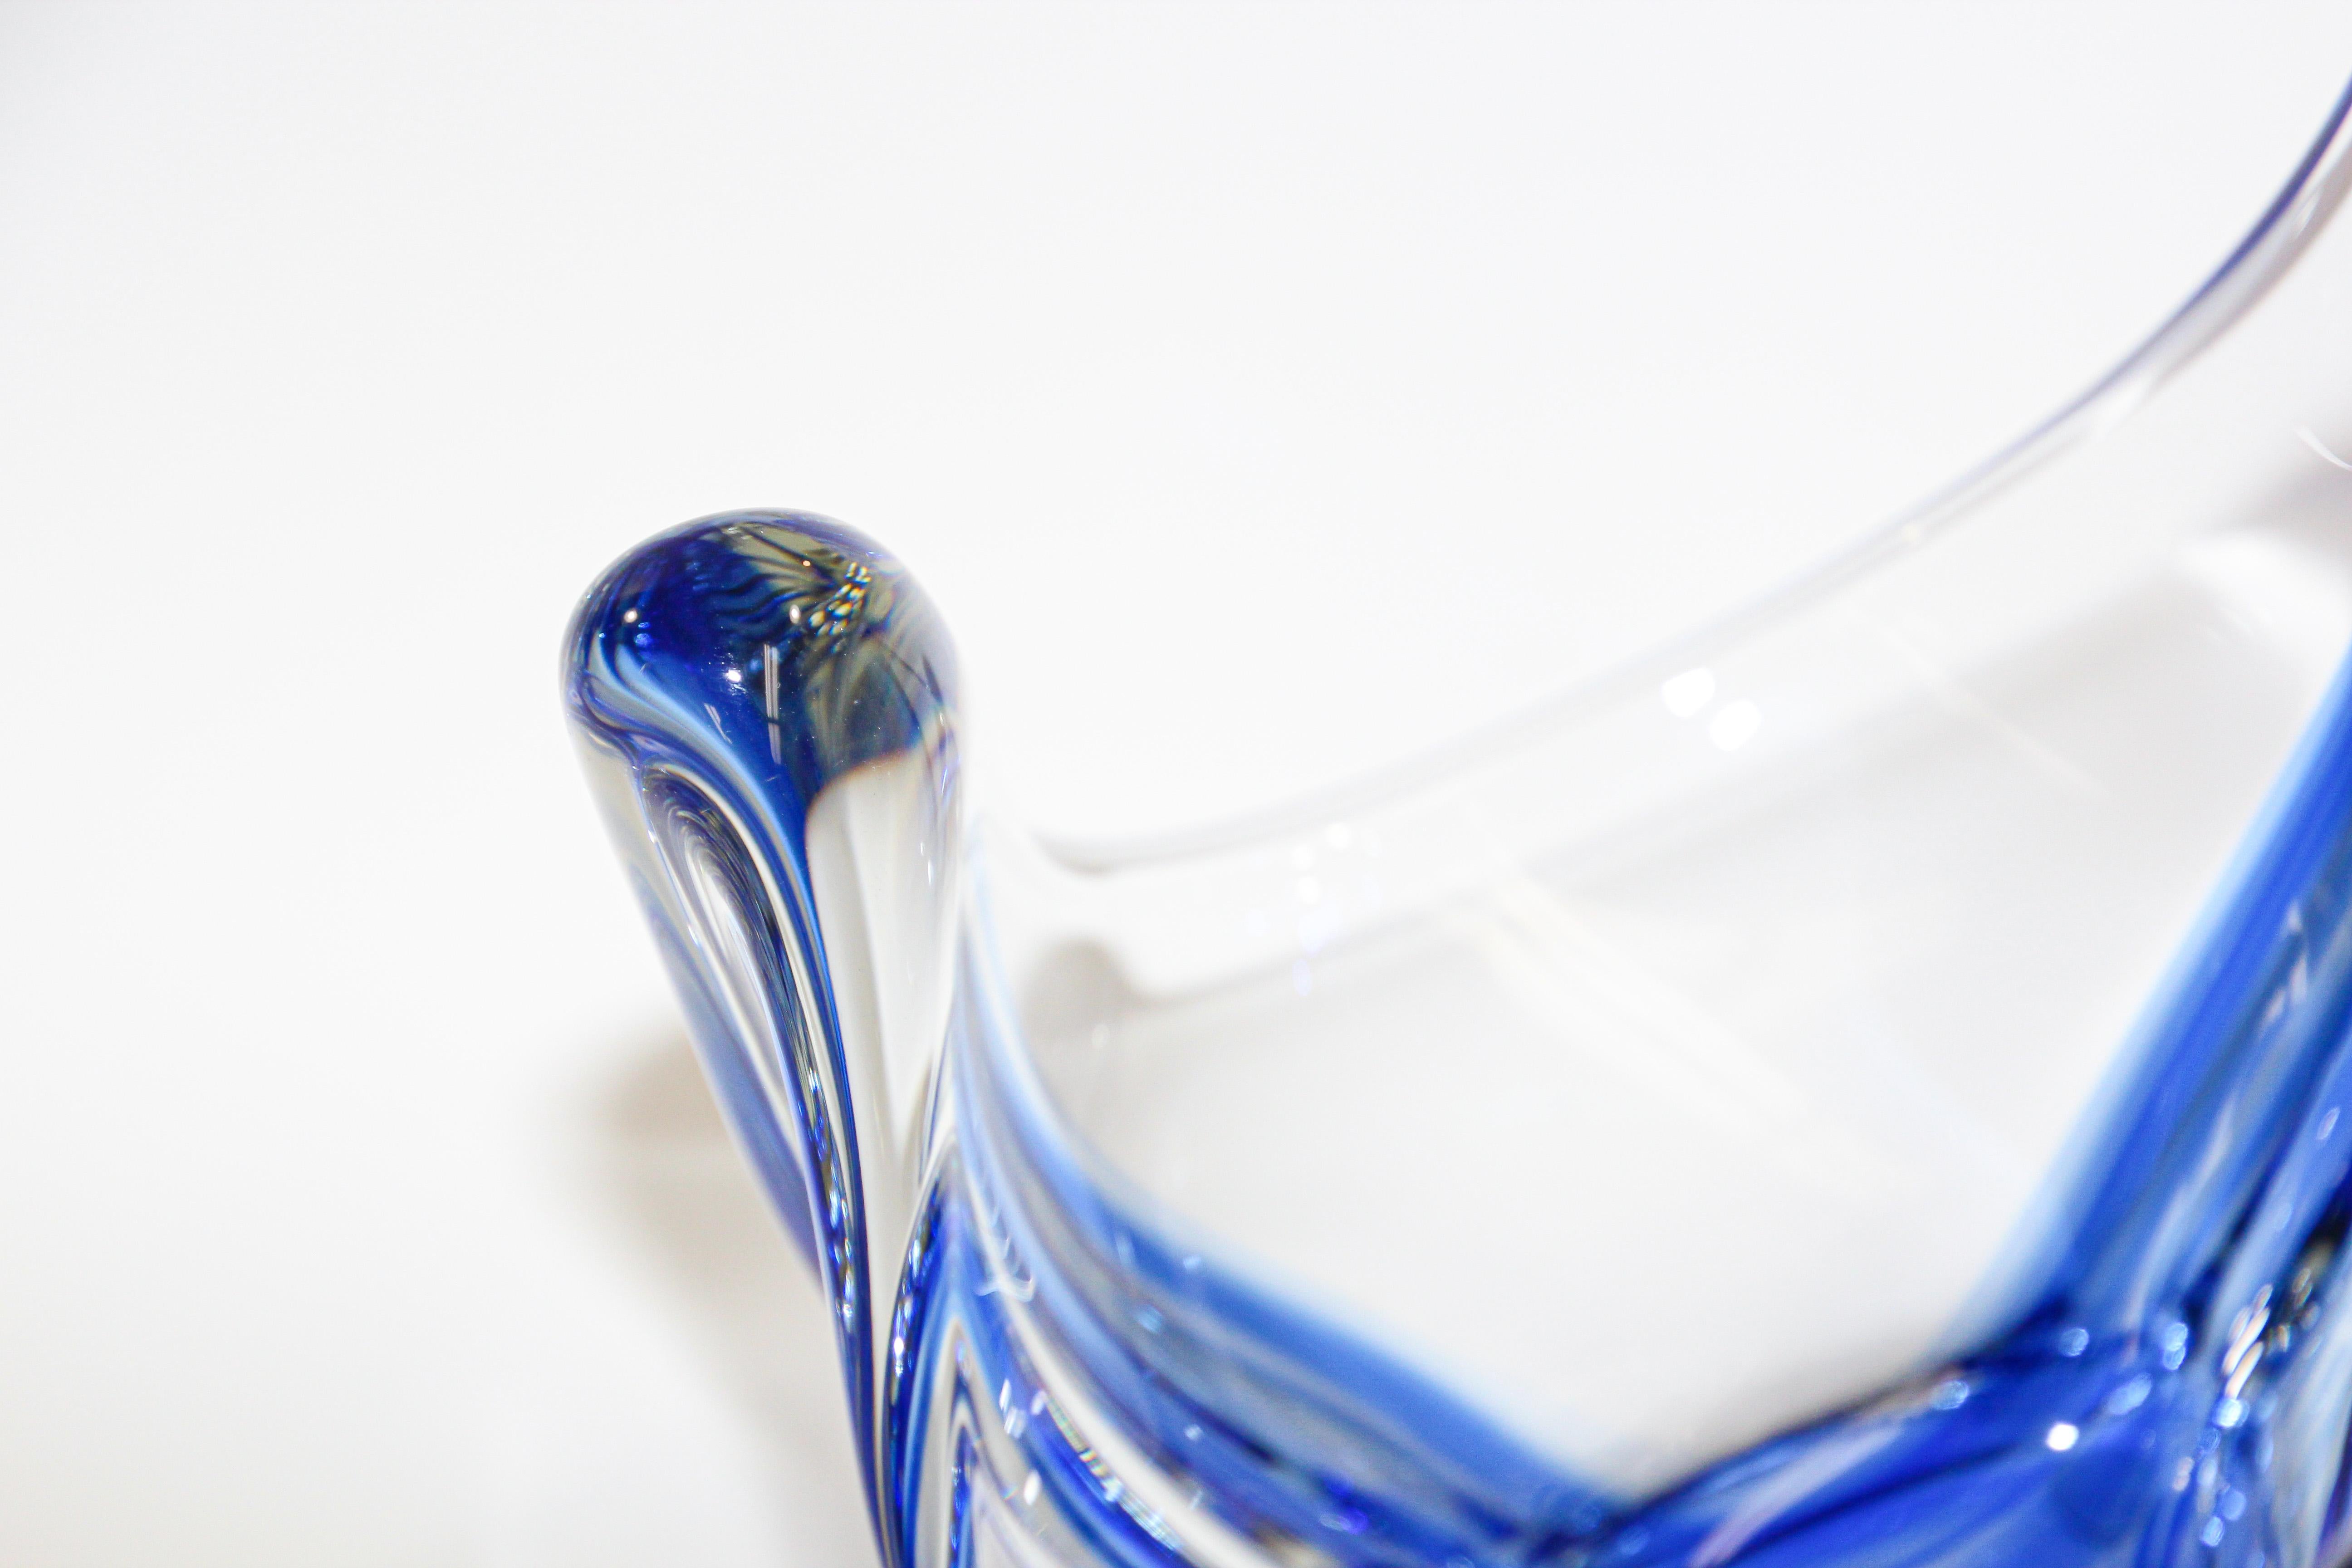 Art Glass Sculptural Blue Large Decorative Hand Blown Murano Glass Bowl